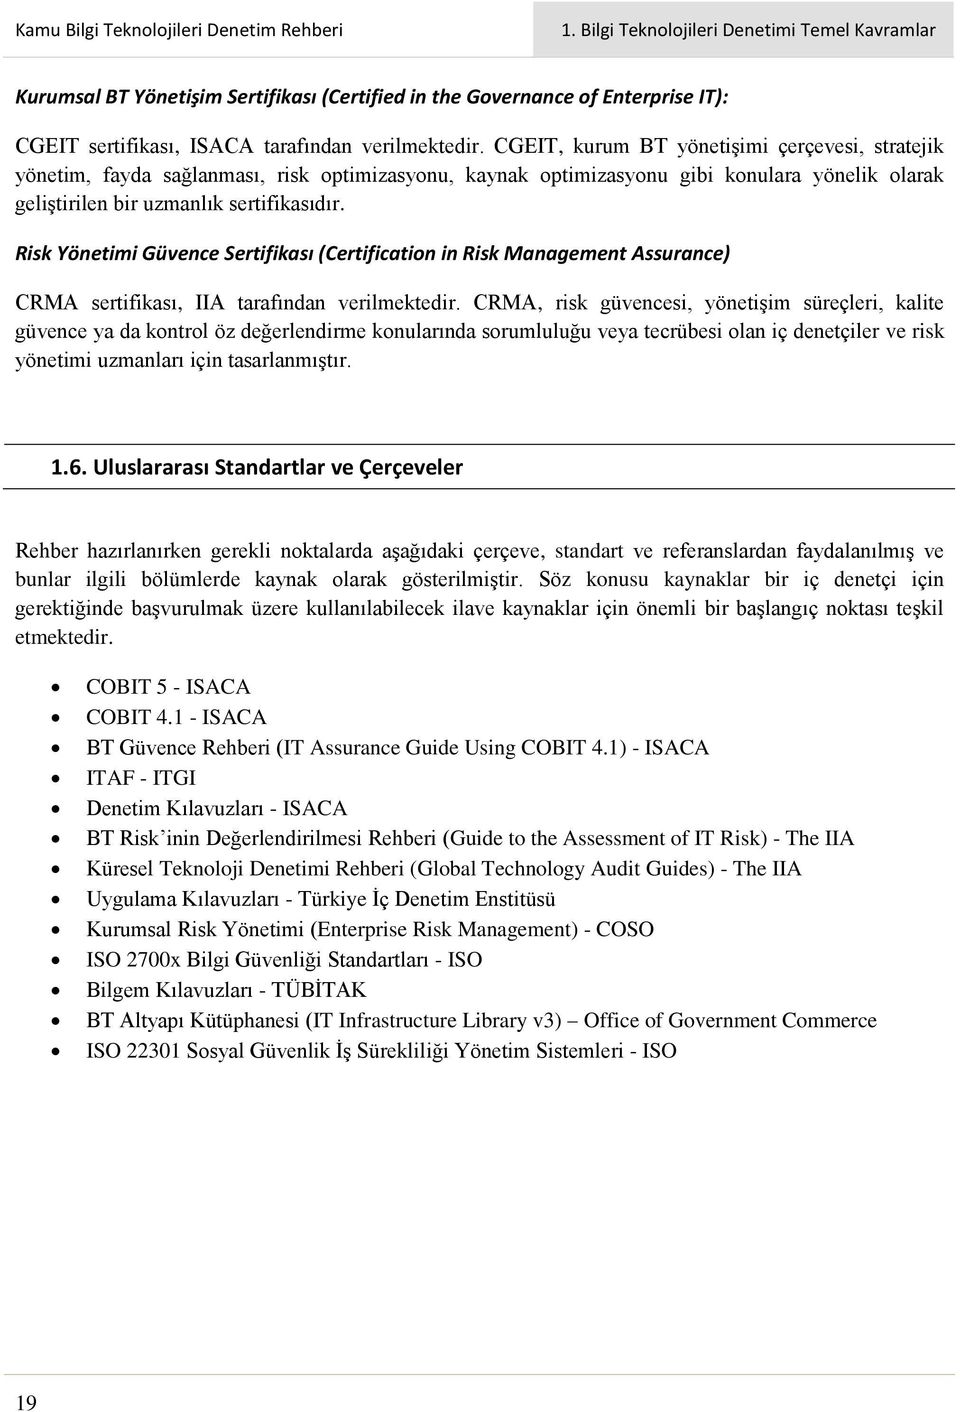 Risk Yönetimi Güvence Sertifikası (Certification in Risk Management Assurance) CRMA sertifikası, IIA tarafından verilmektedir.